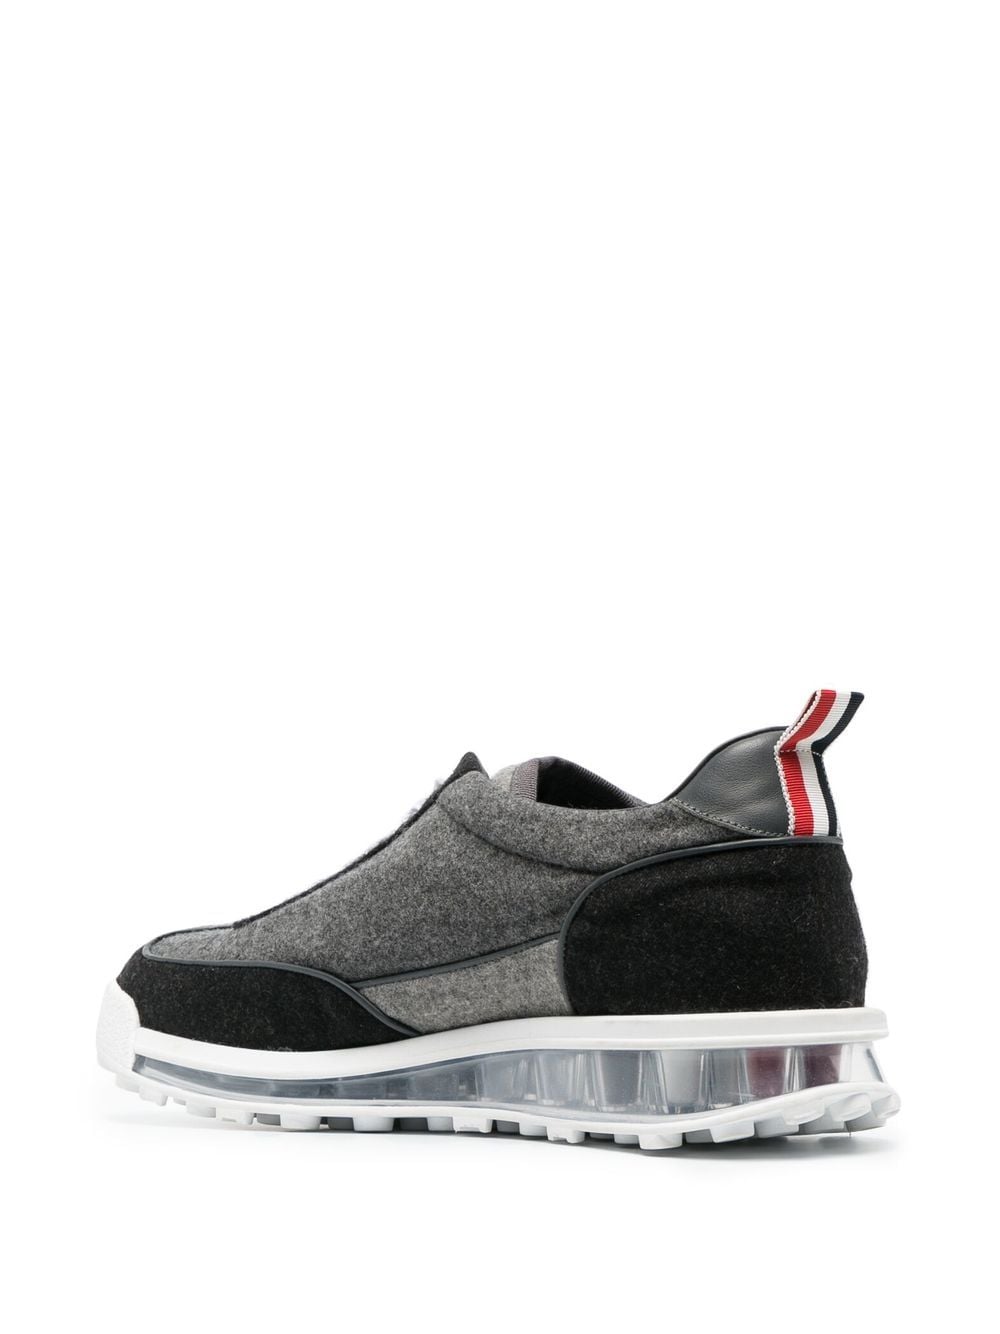 Thom Browne Sneakers Med grey-Thom Browne- Basse Dresso